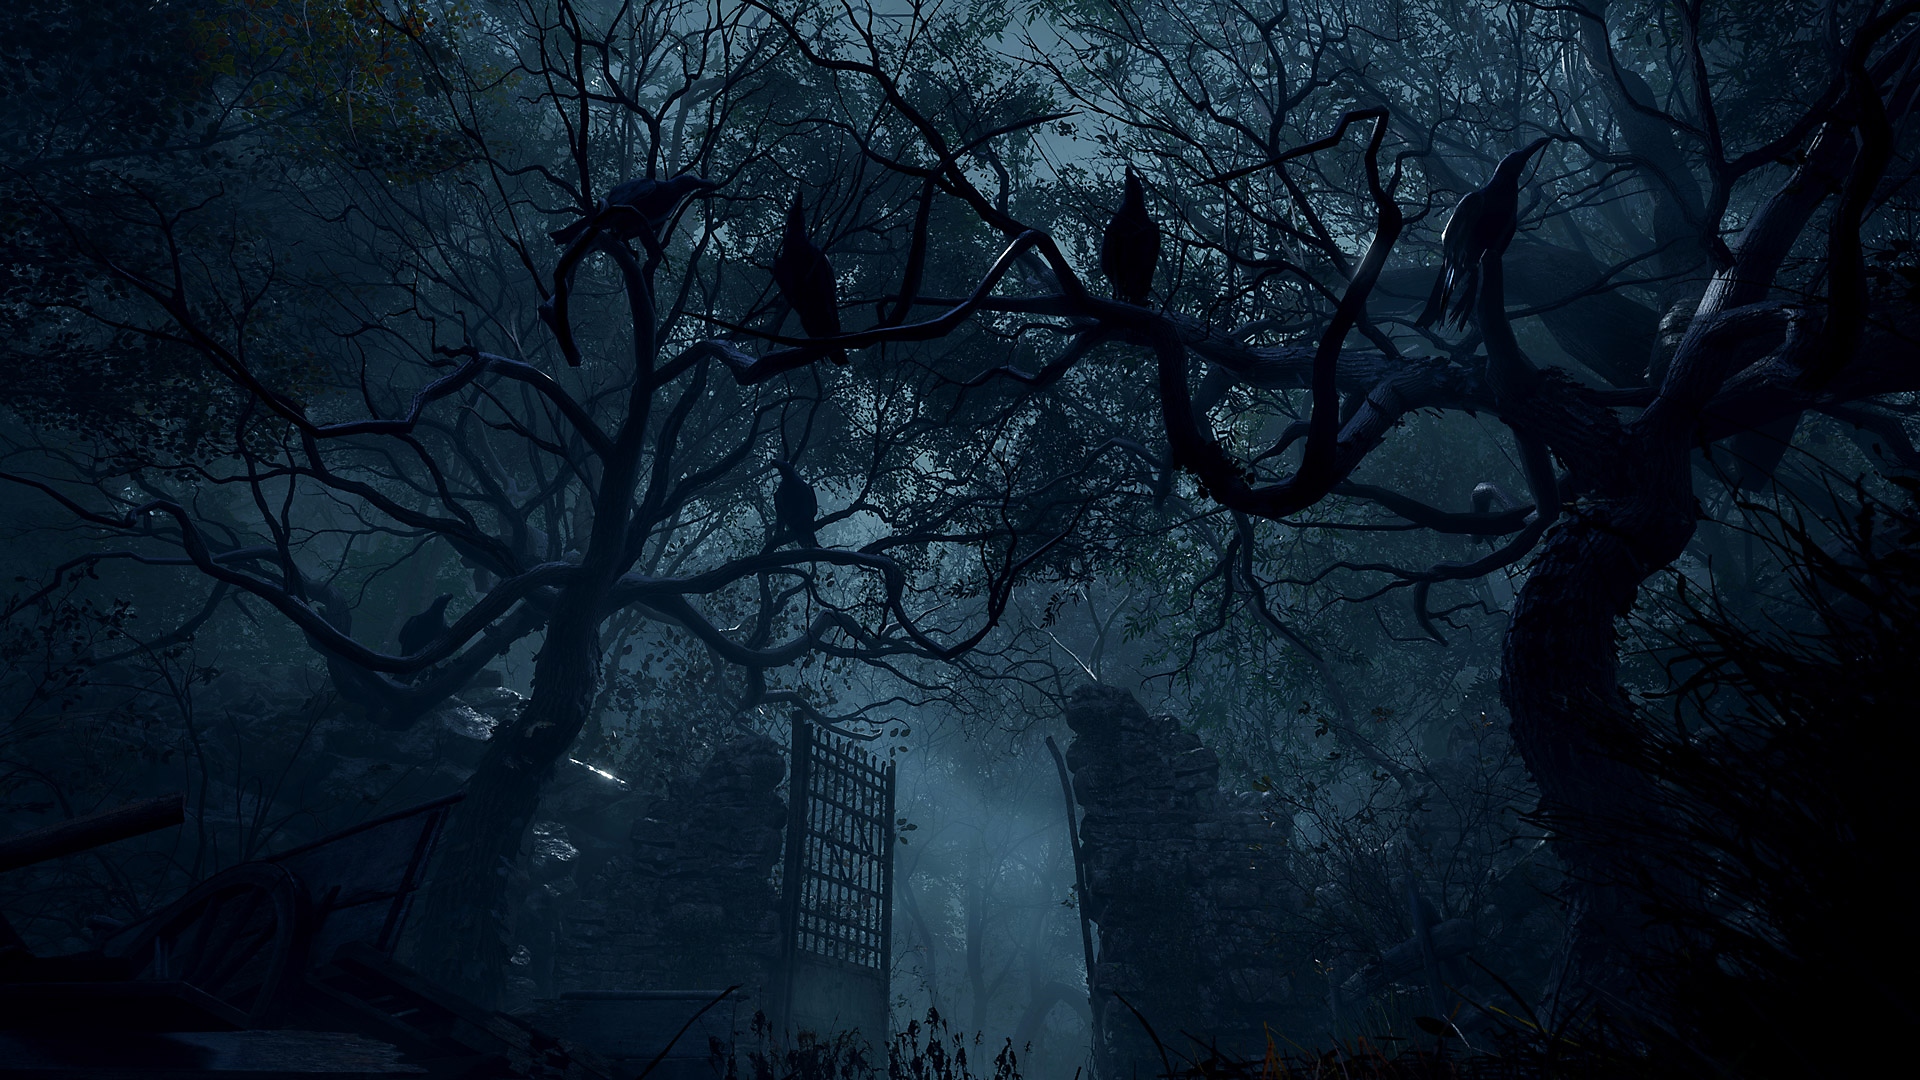 Resident Evil 4 – skärmbild på höga stengrindar i ett skogsområde.